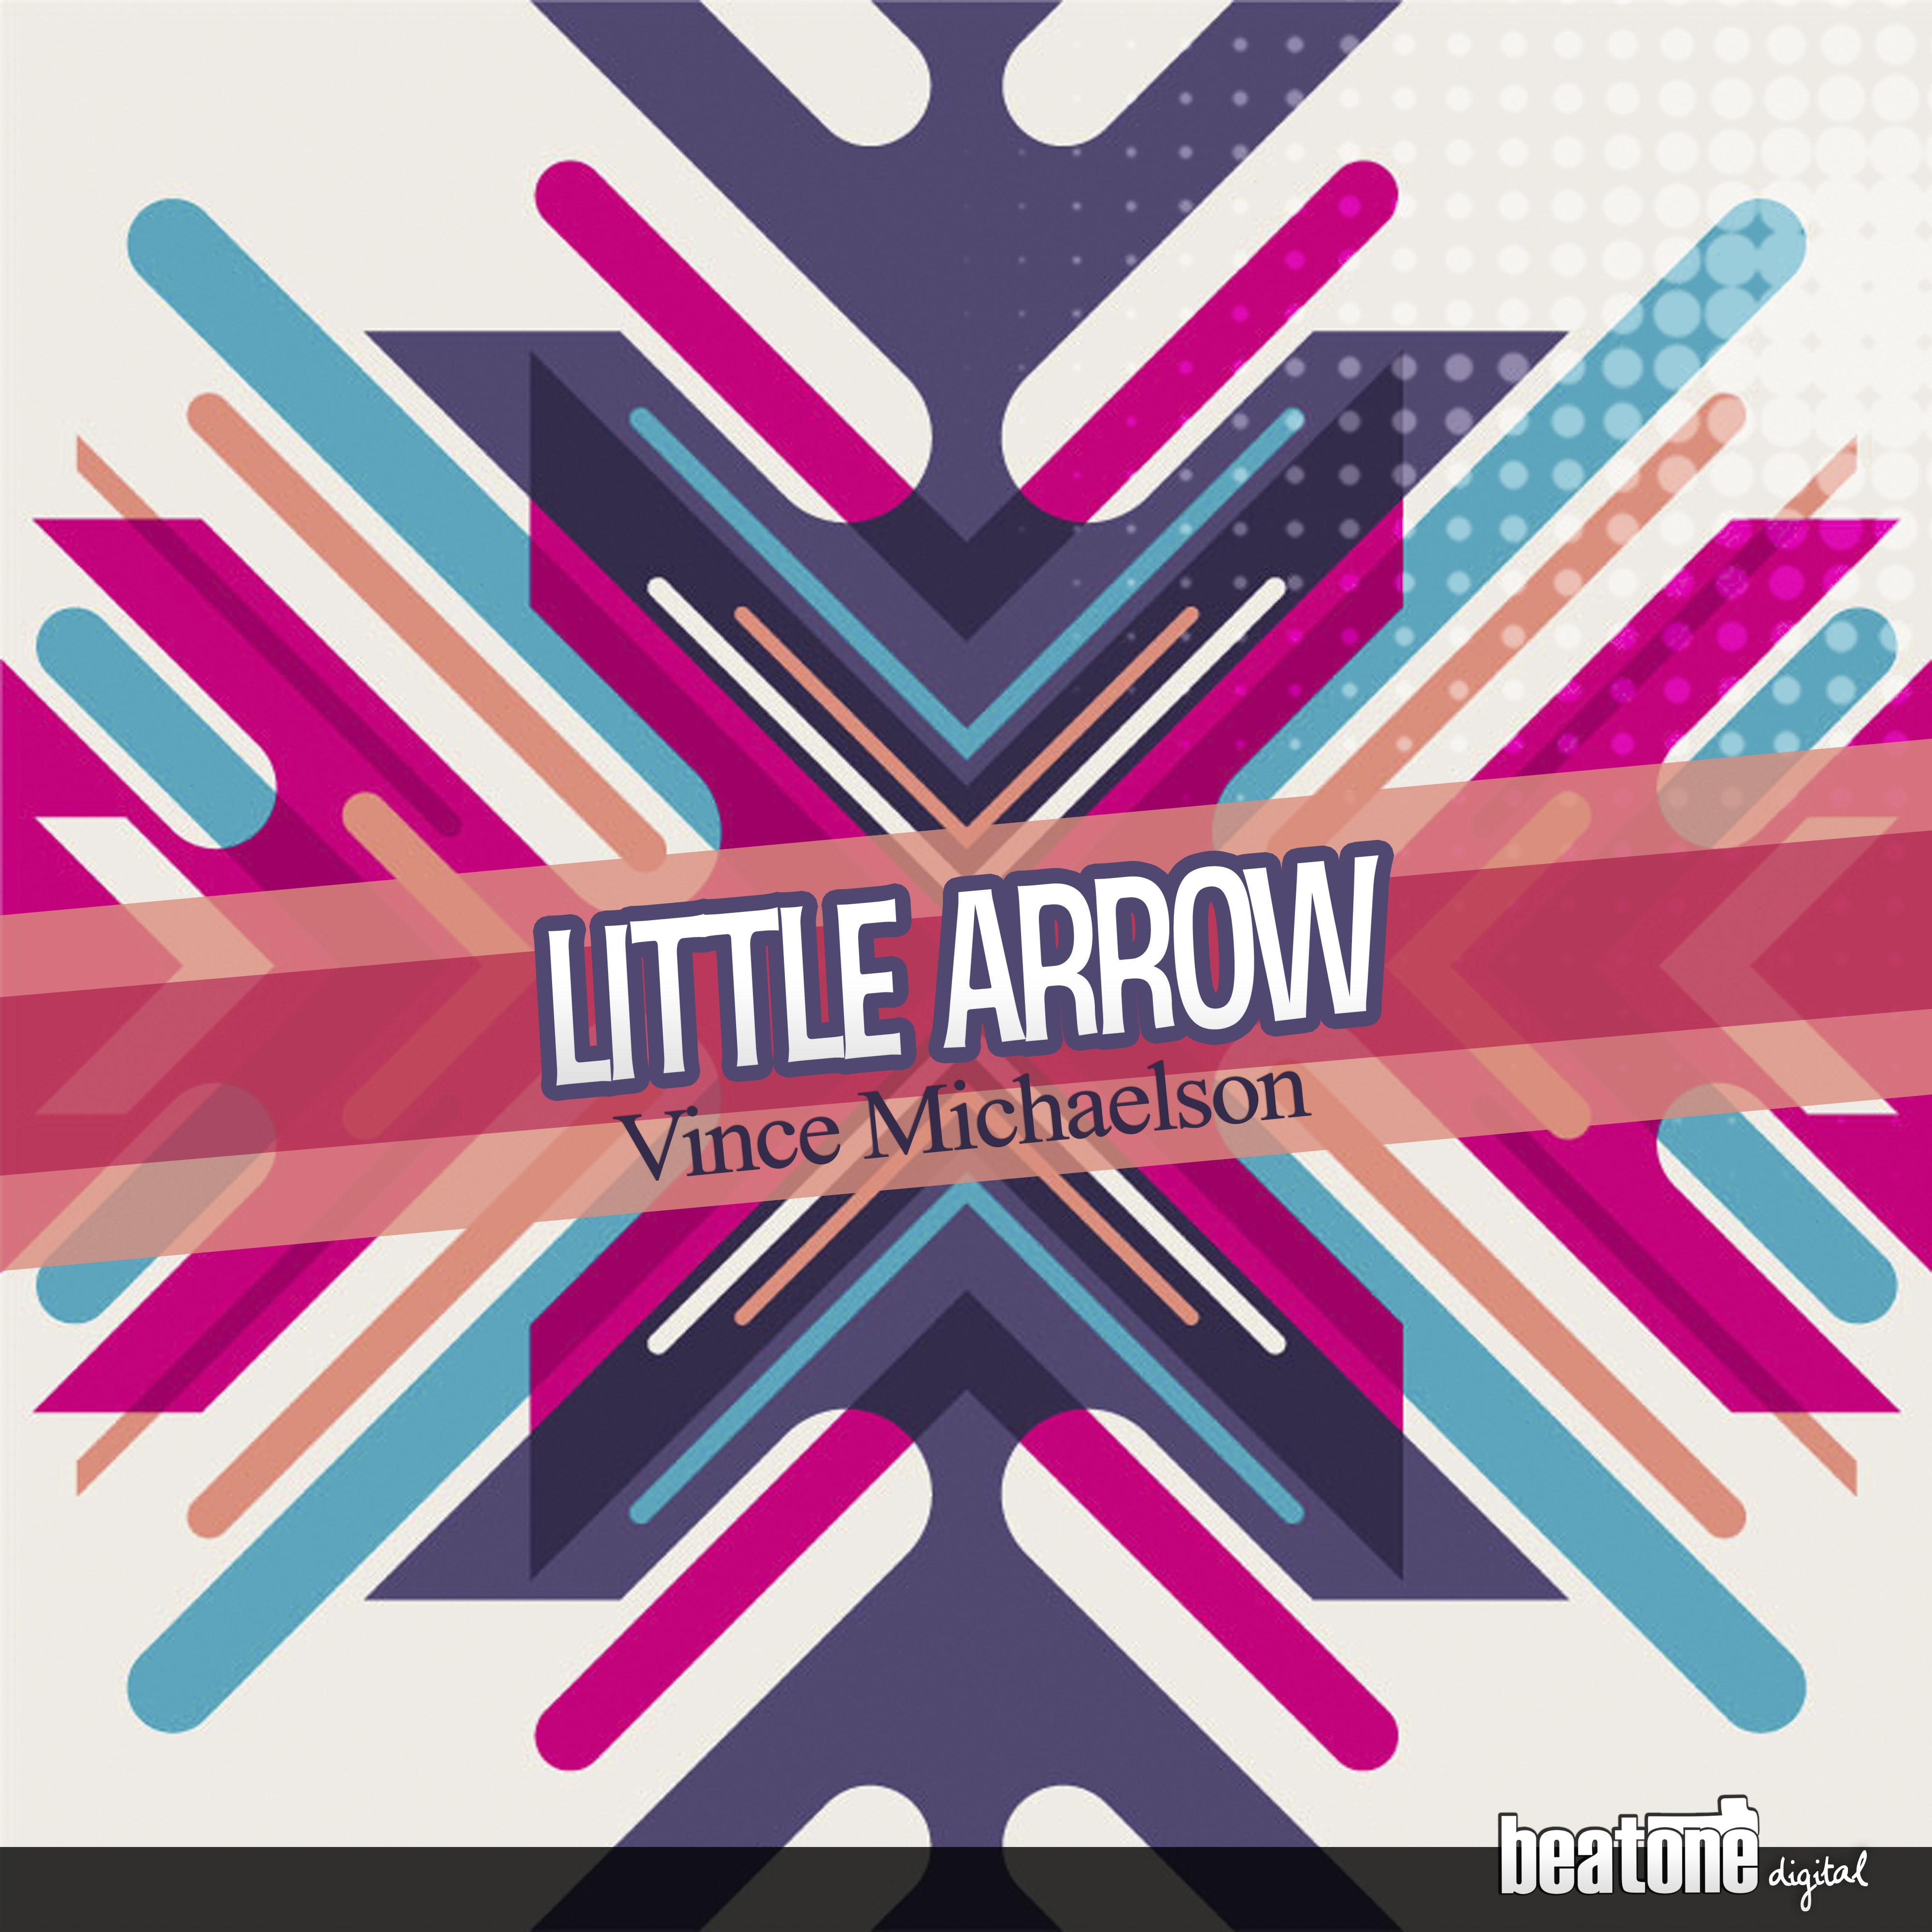 Little Arrow